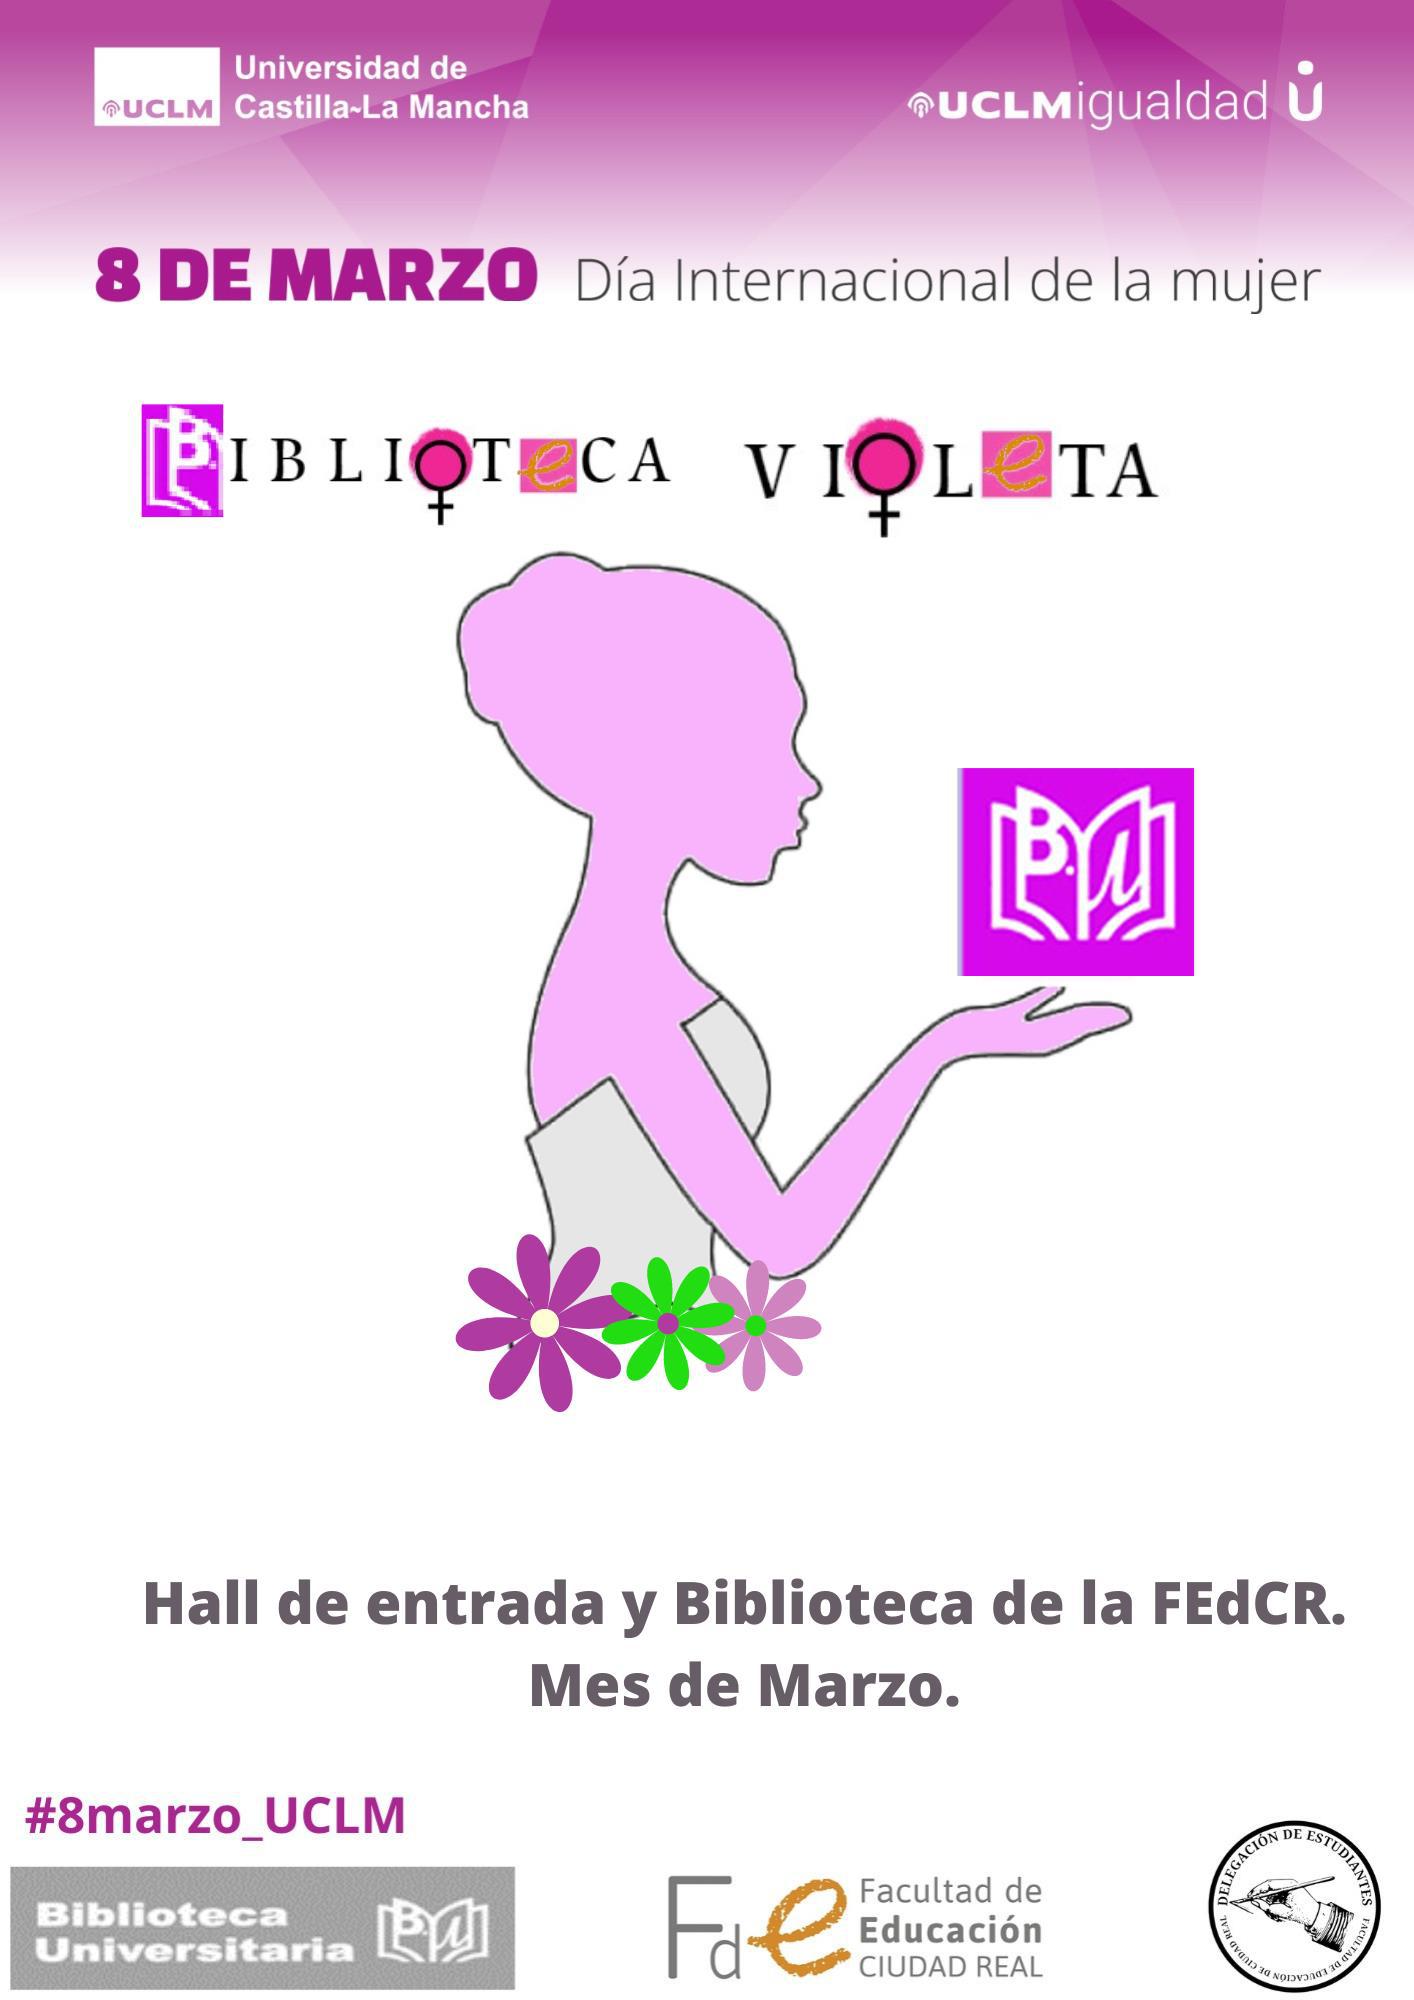 Exposición Biblioteca F. de Educación campus de Ciudad Real